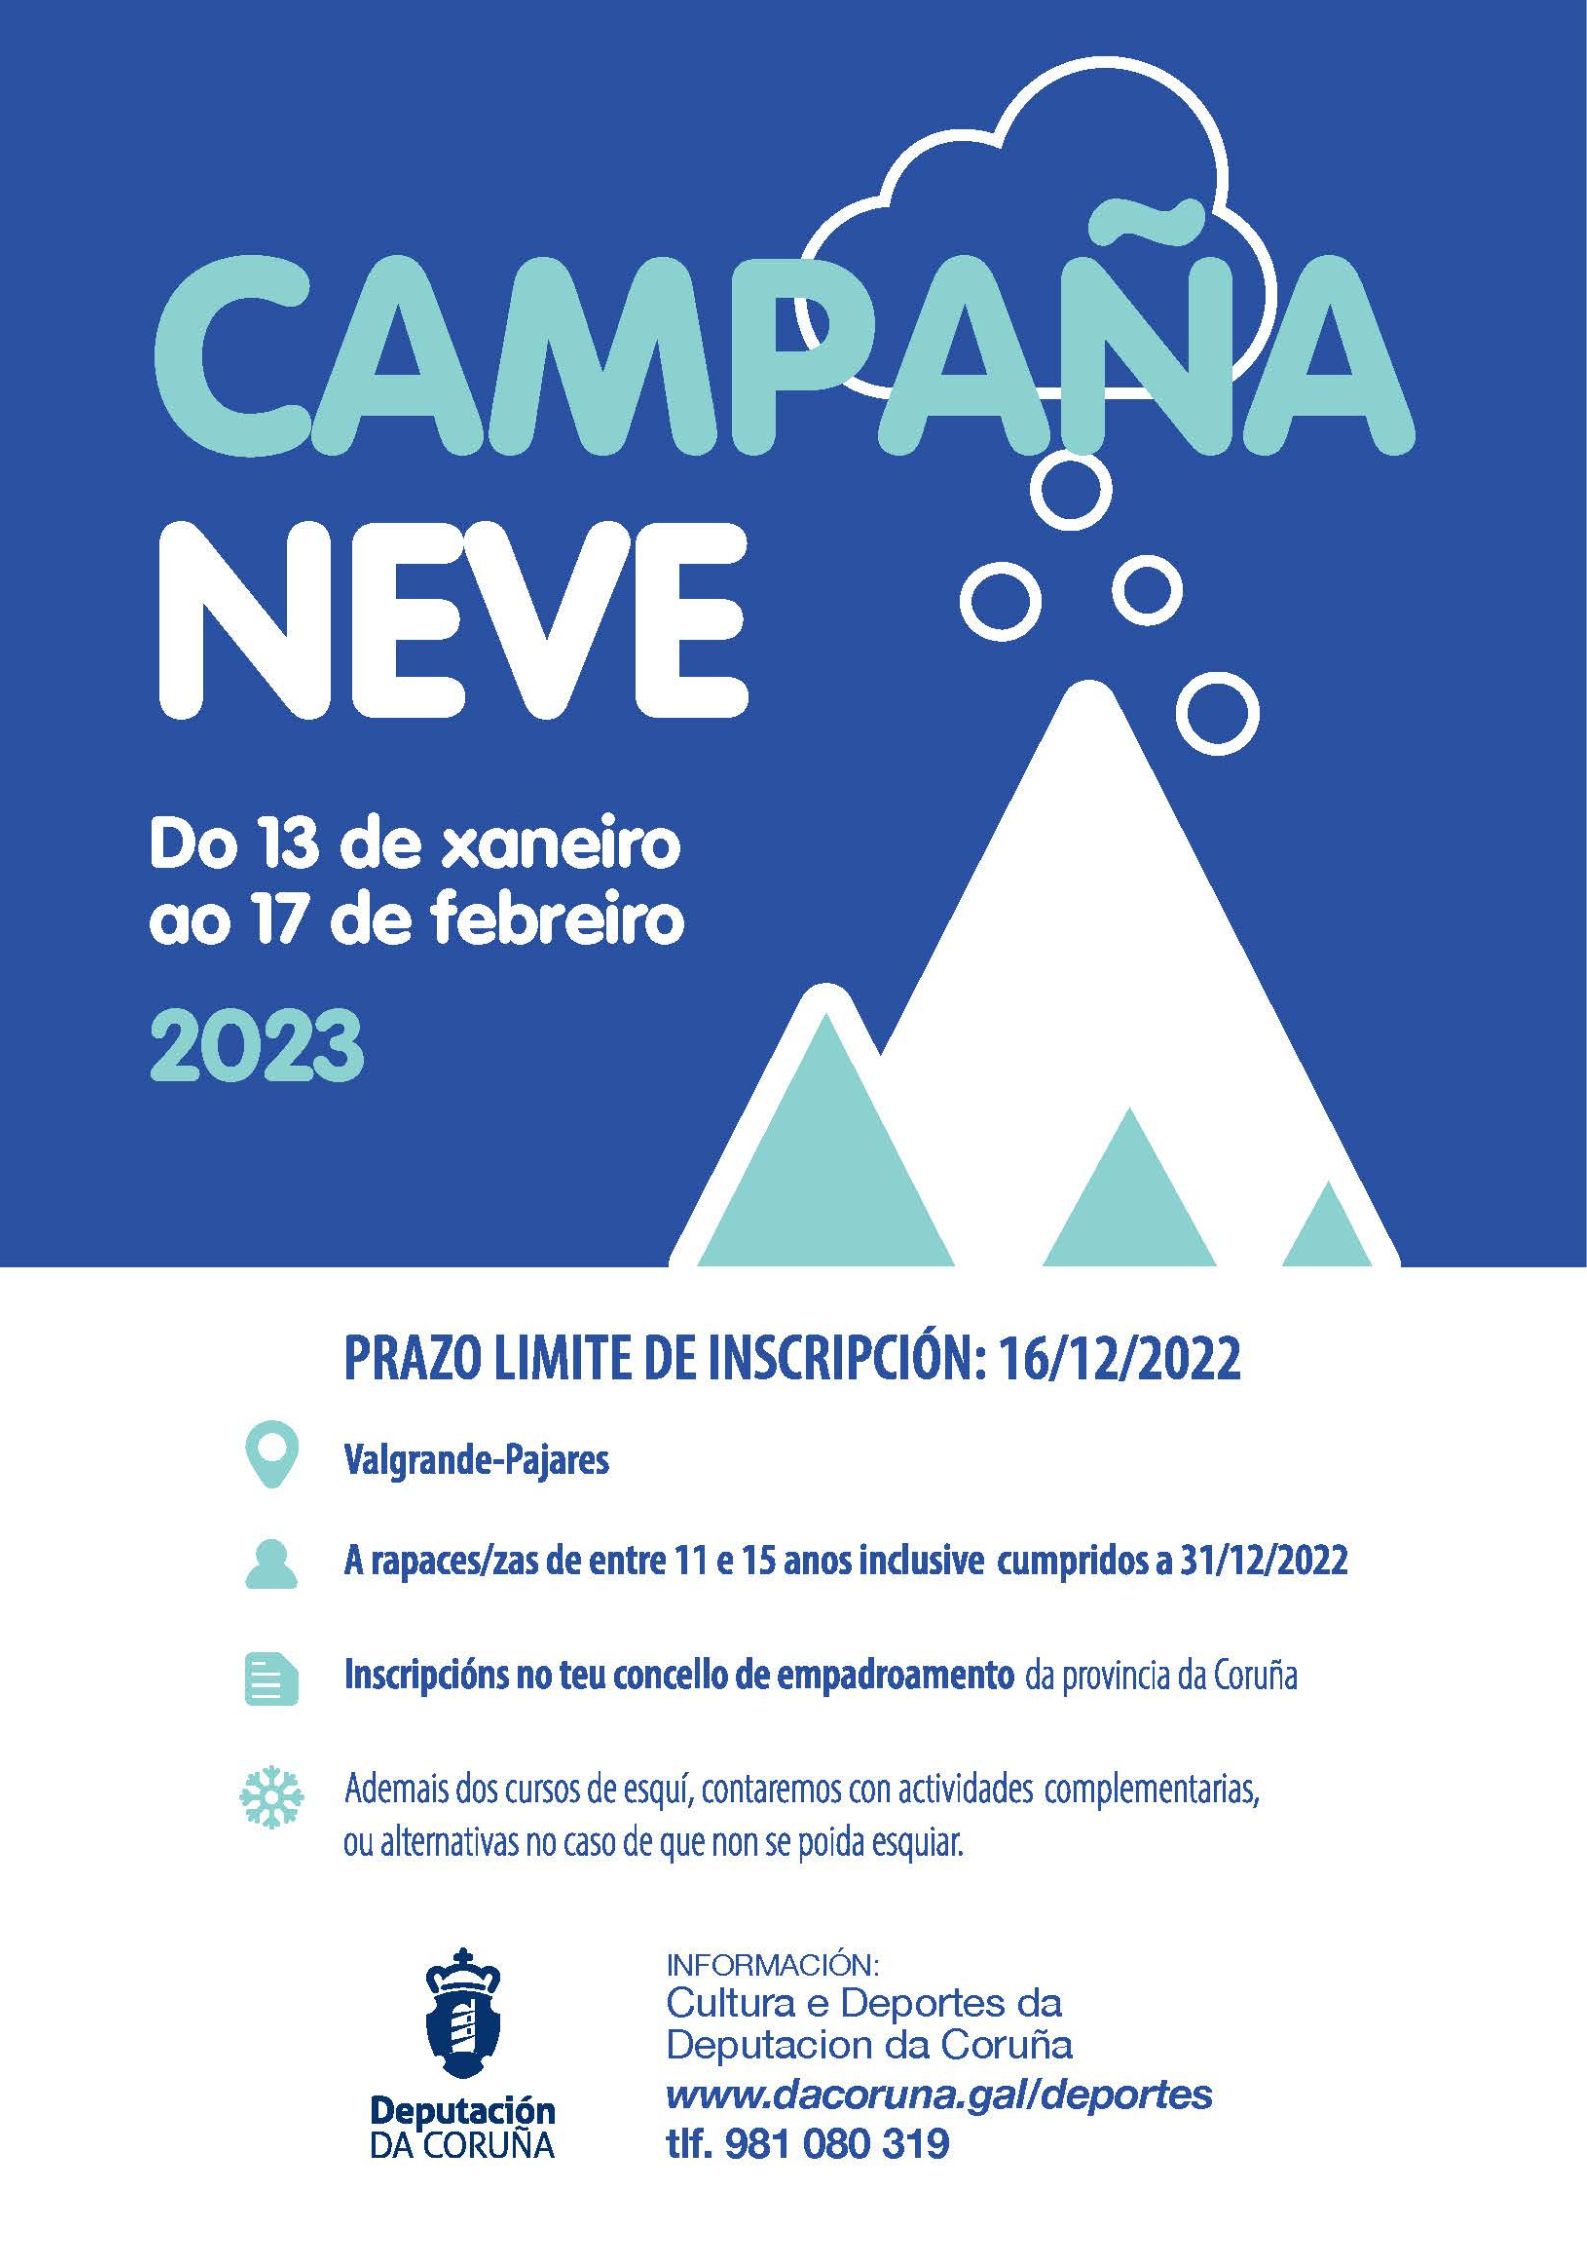 Campaña da neve 2023 - Deputación da Coruña